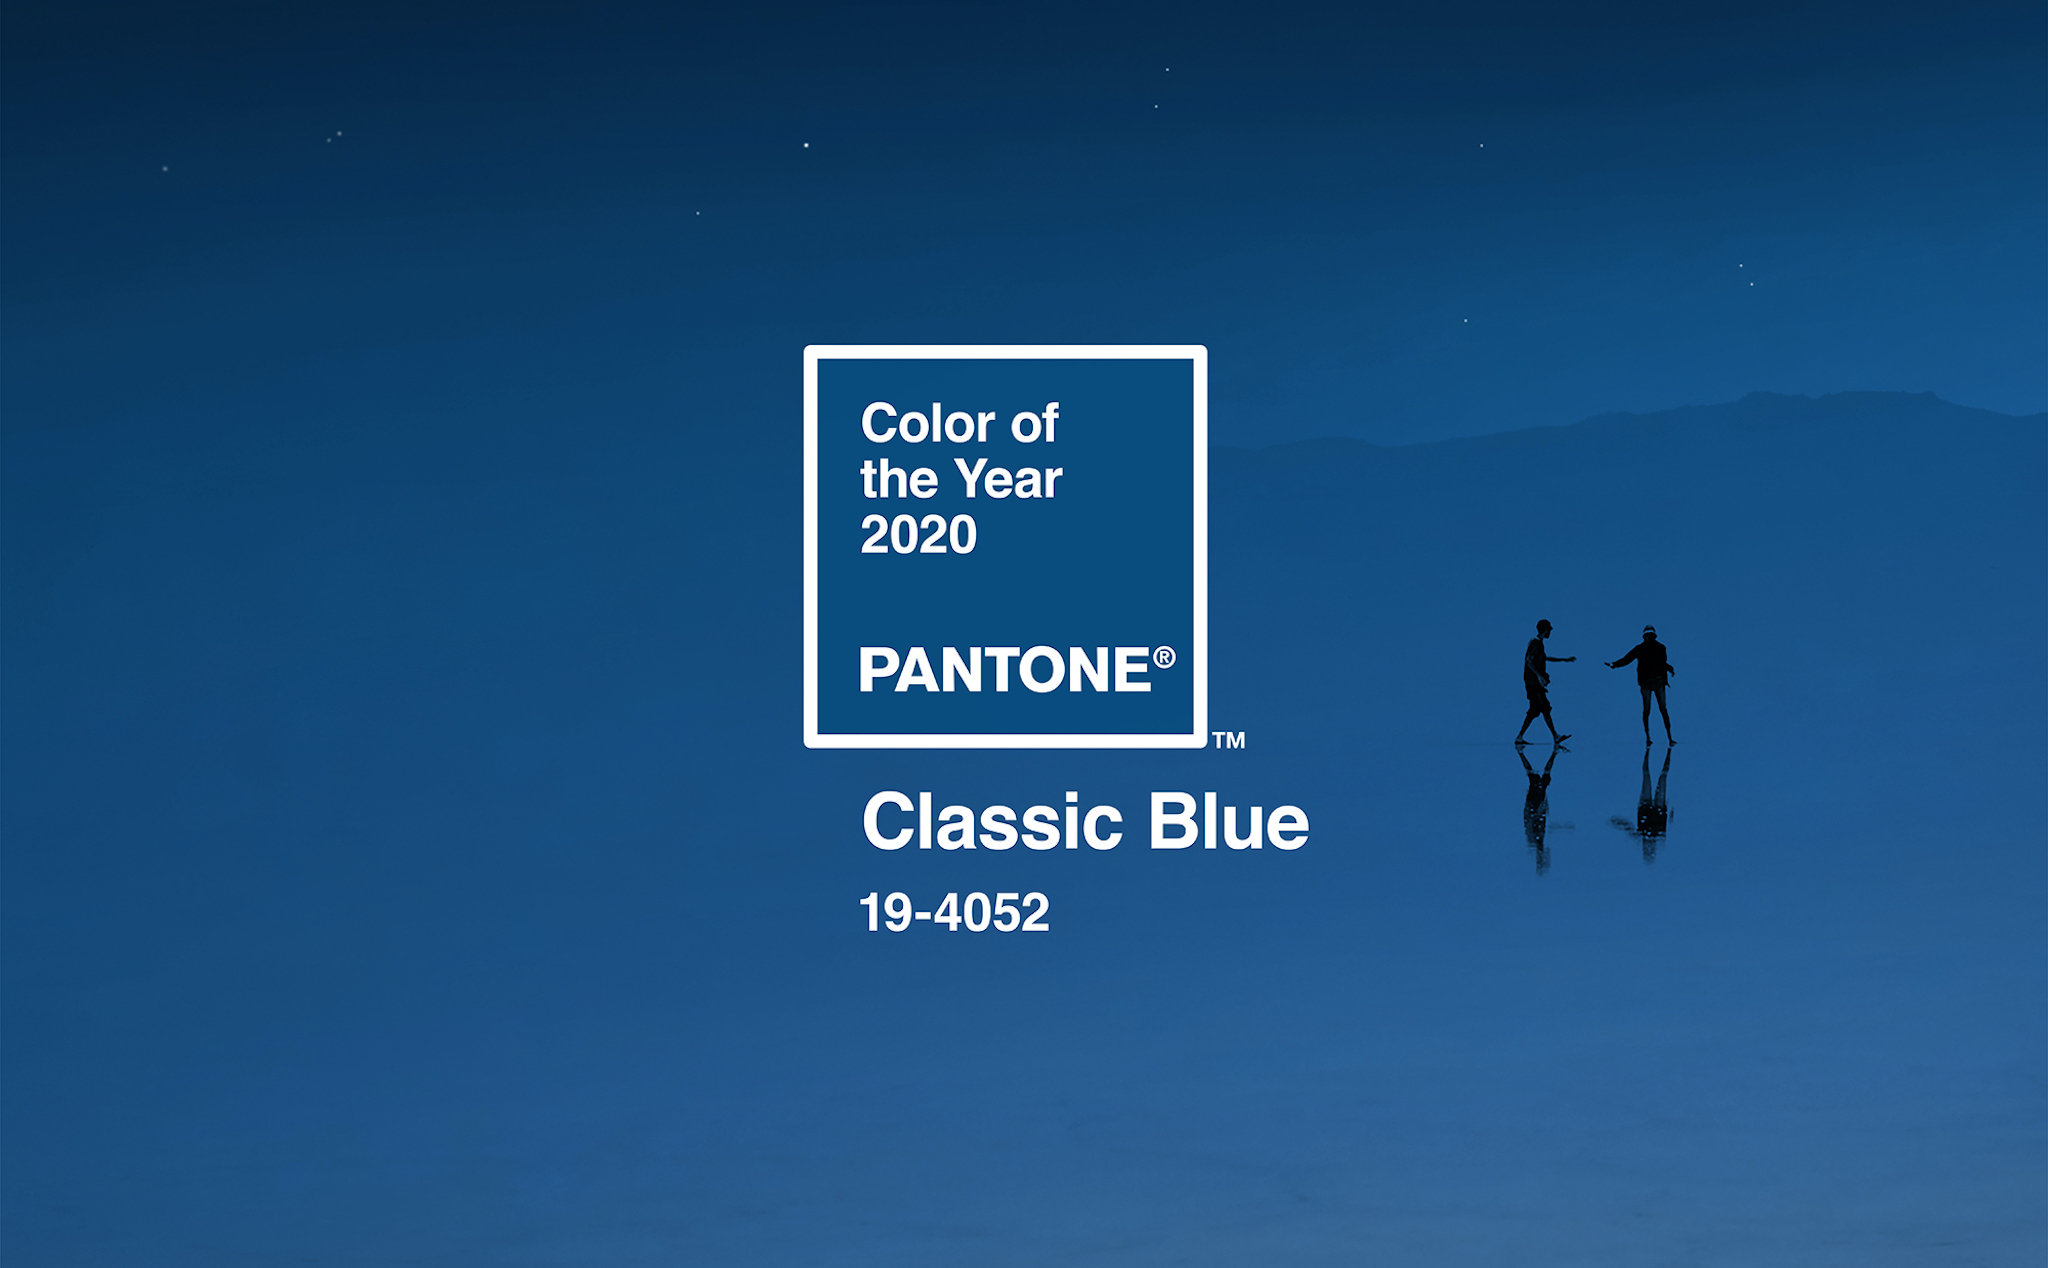 Classic Blue - Xanh dương cổ điển: Màu của năm 2020 do Pantone bình chọn